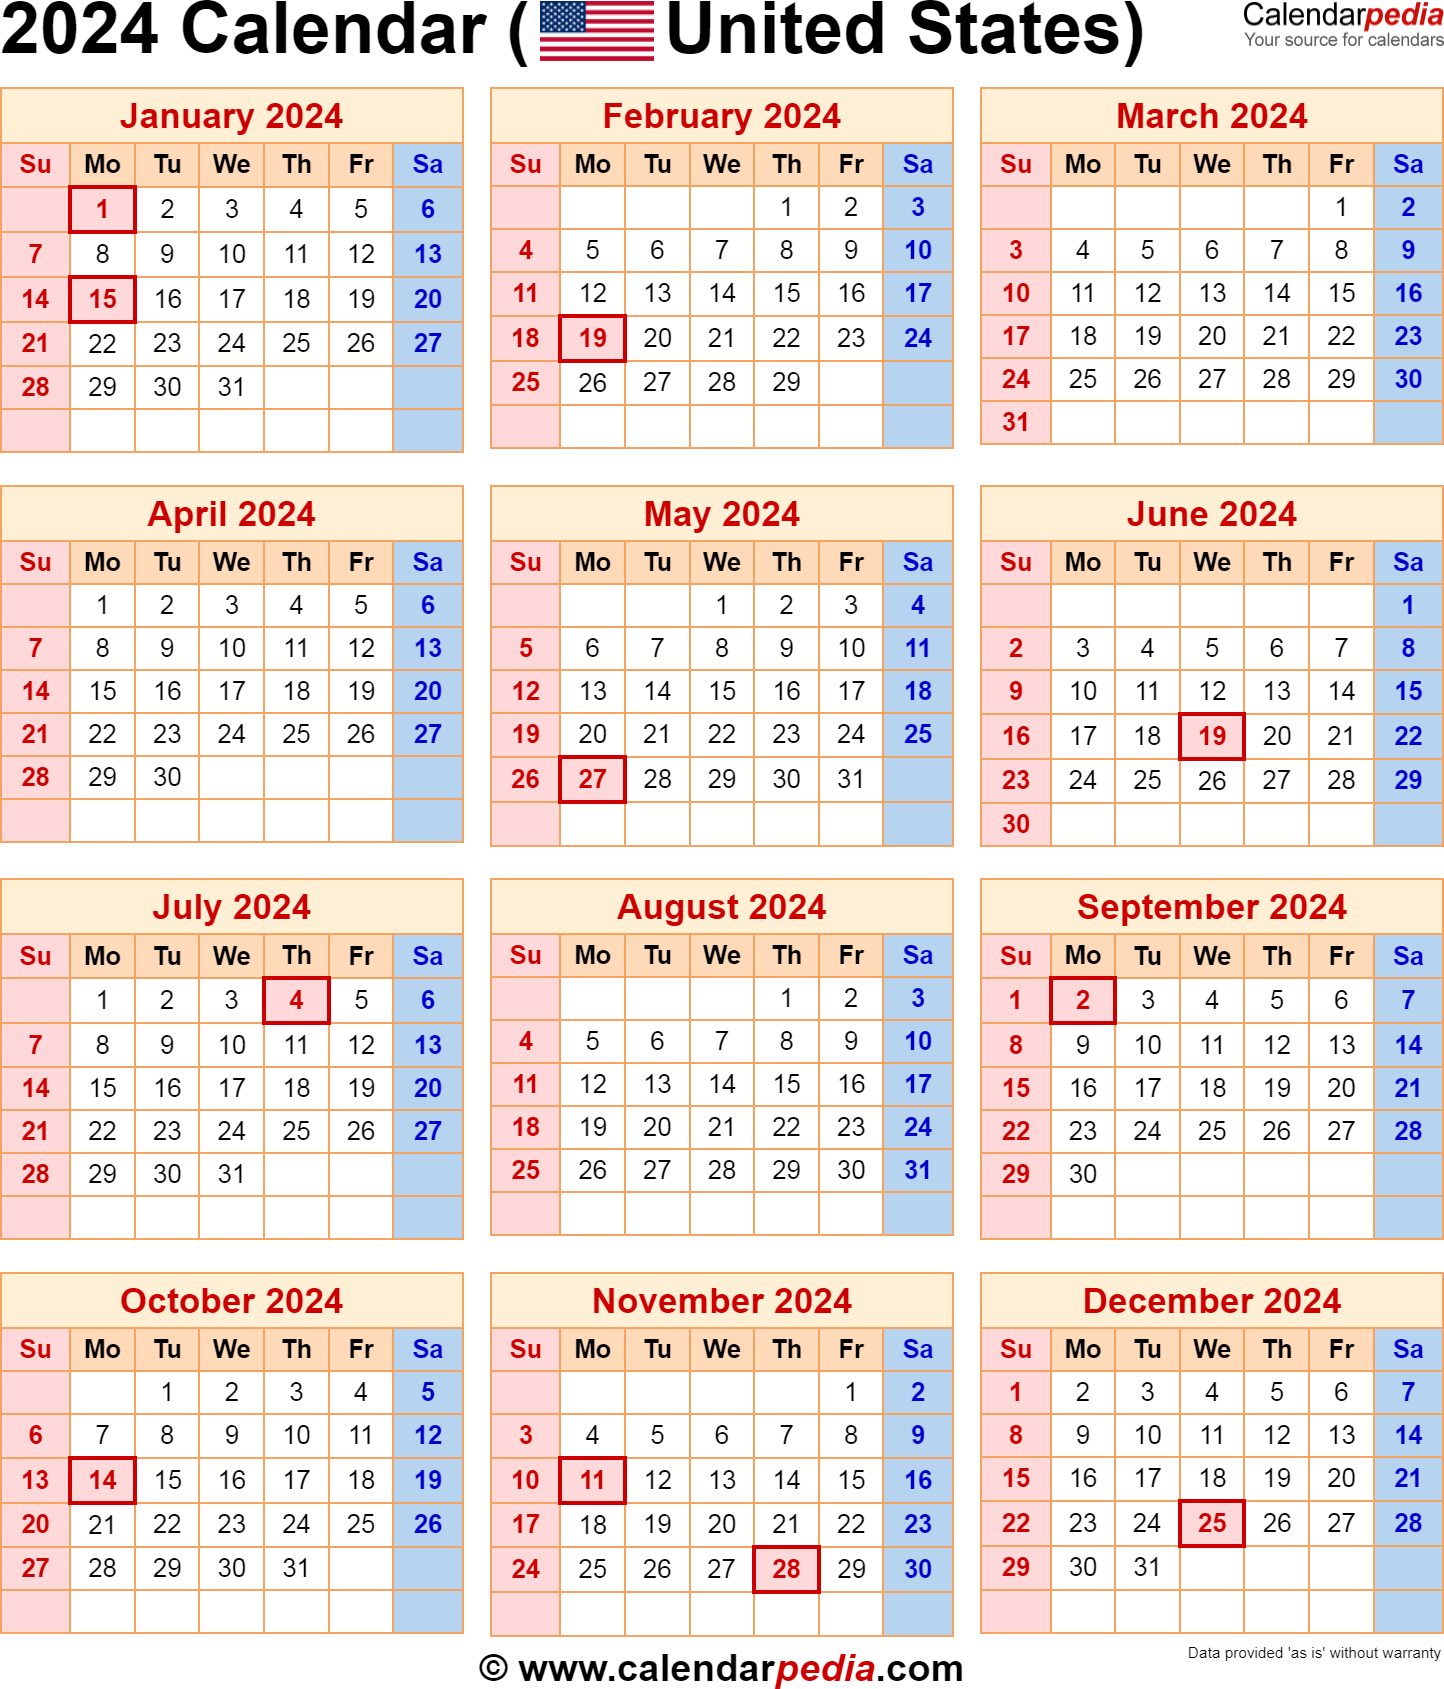 2024 Calendar Printable Free | Free Printable 2024 Wall Calendar With Holidays